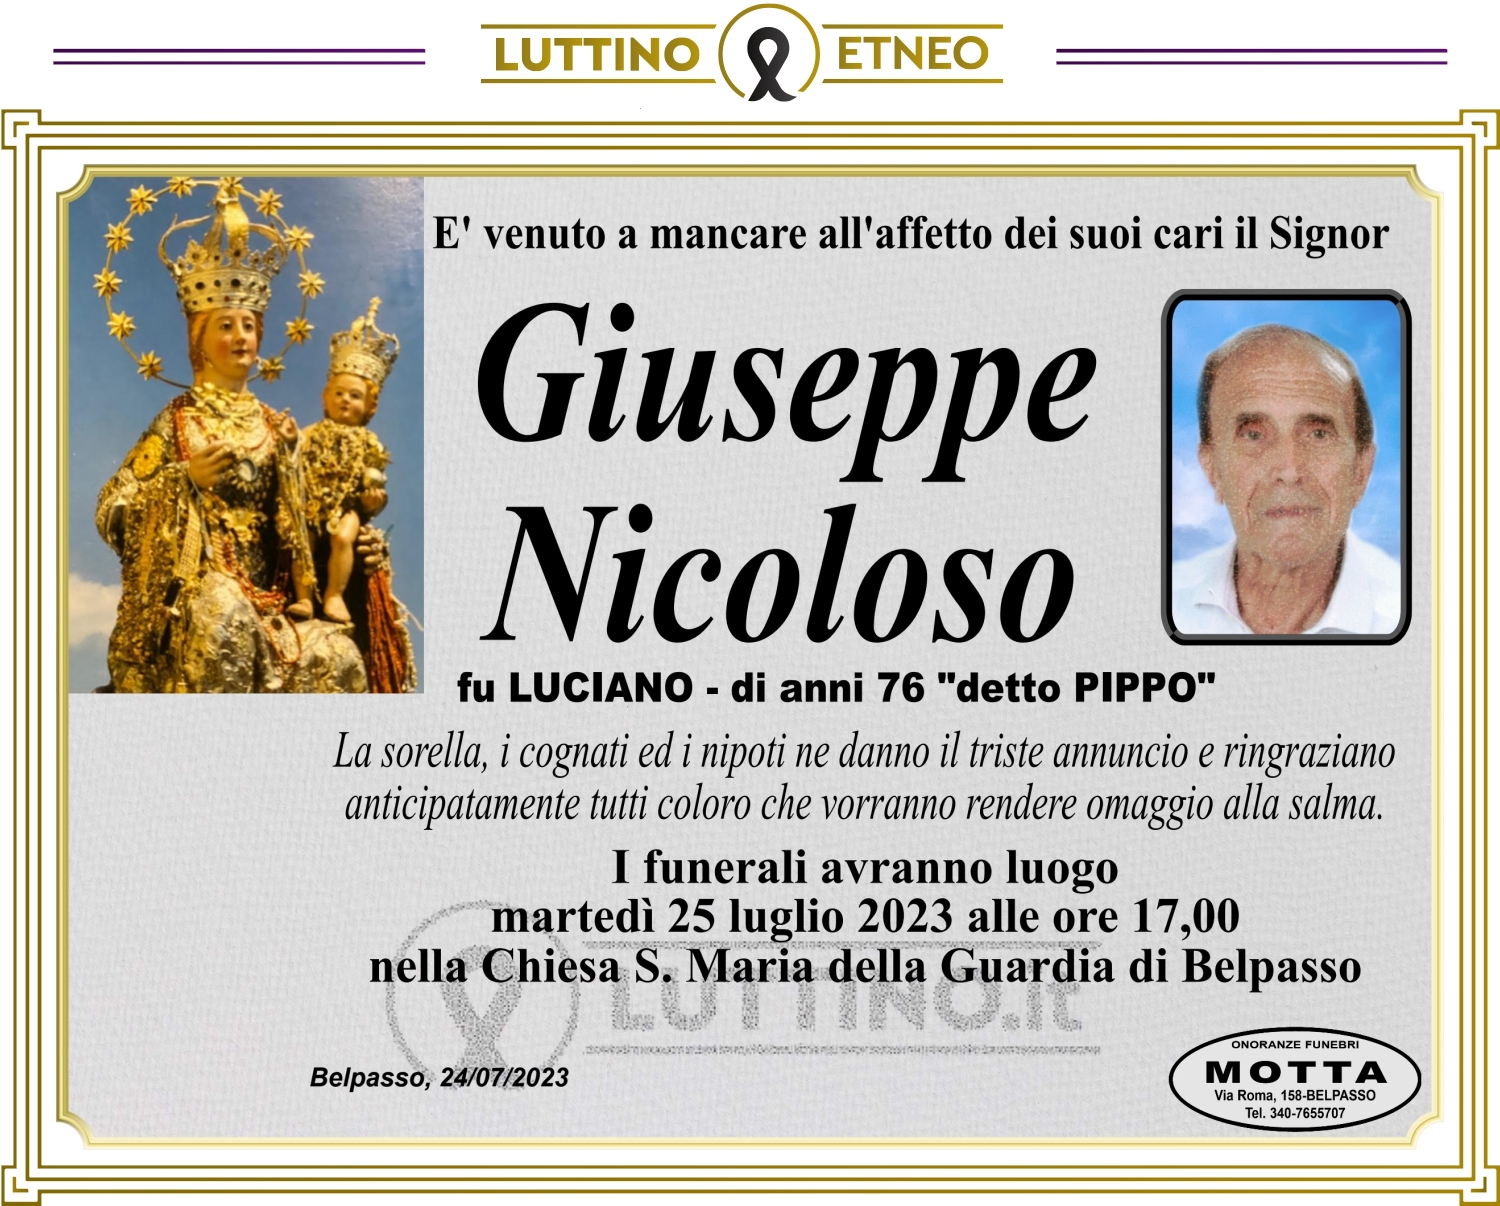 Giuseppe Nicoloso